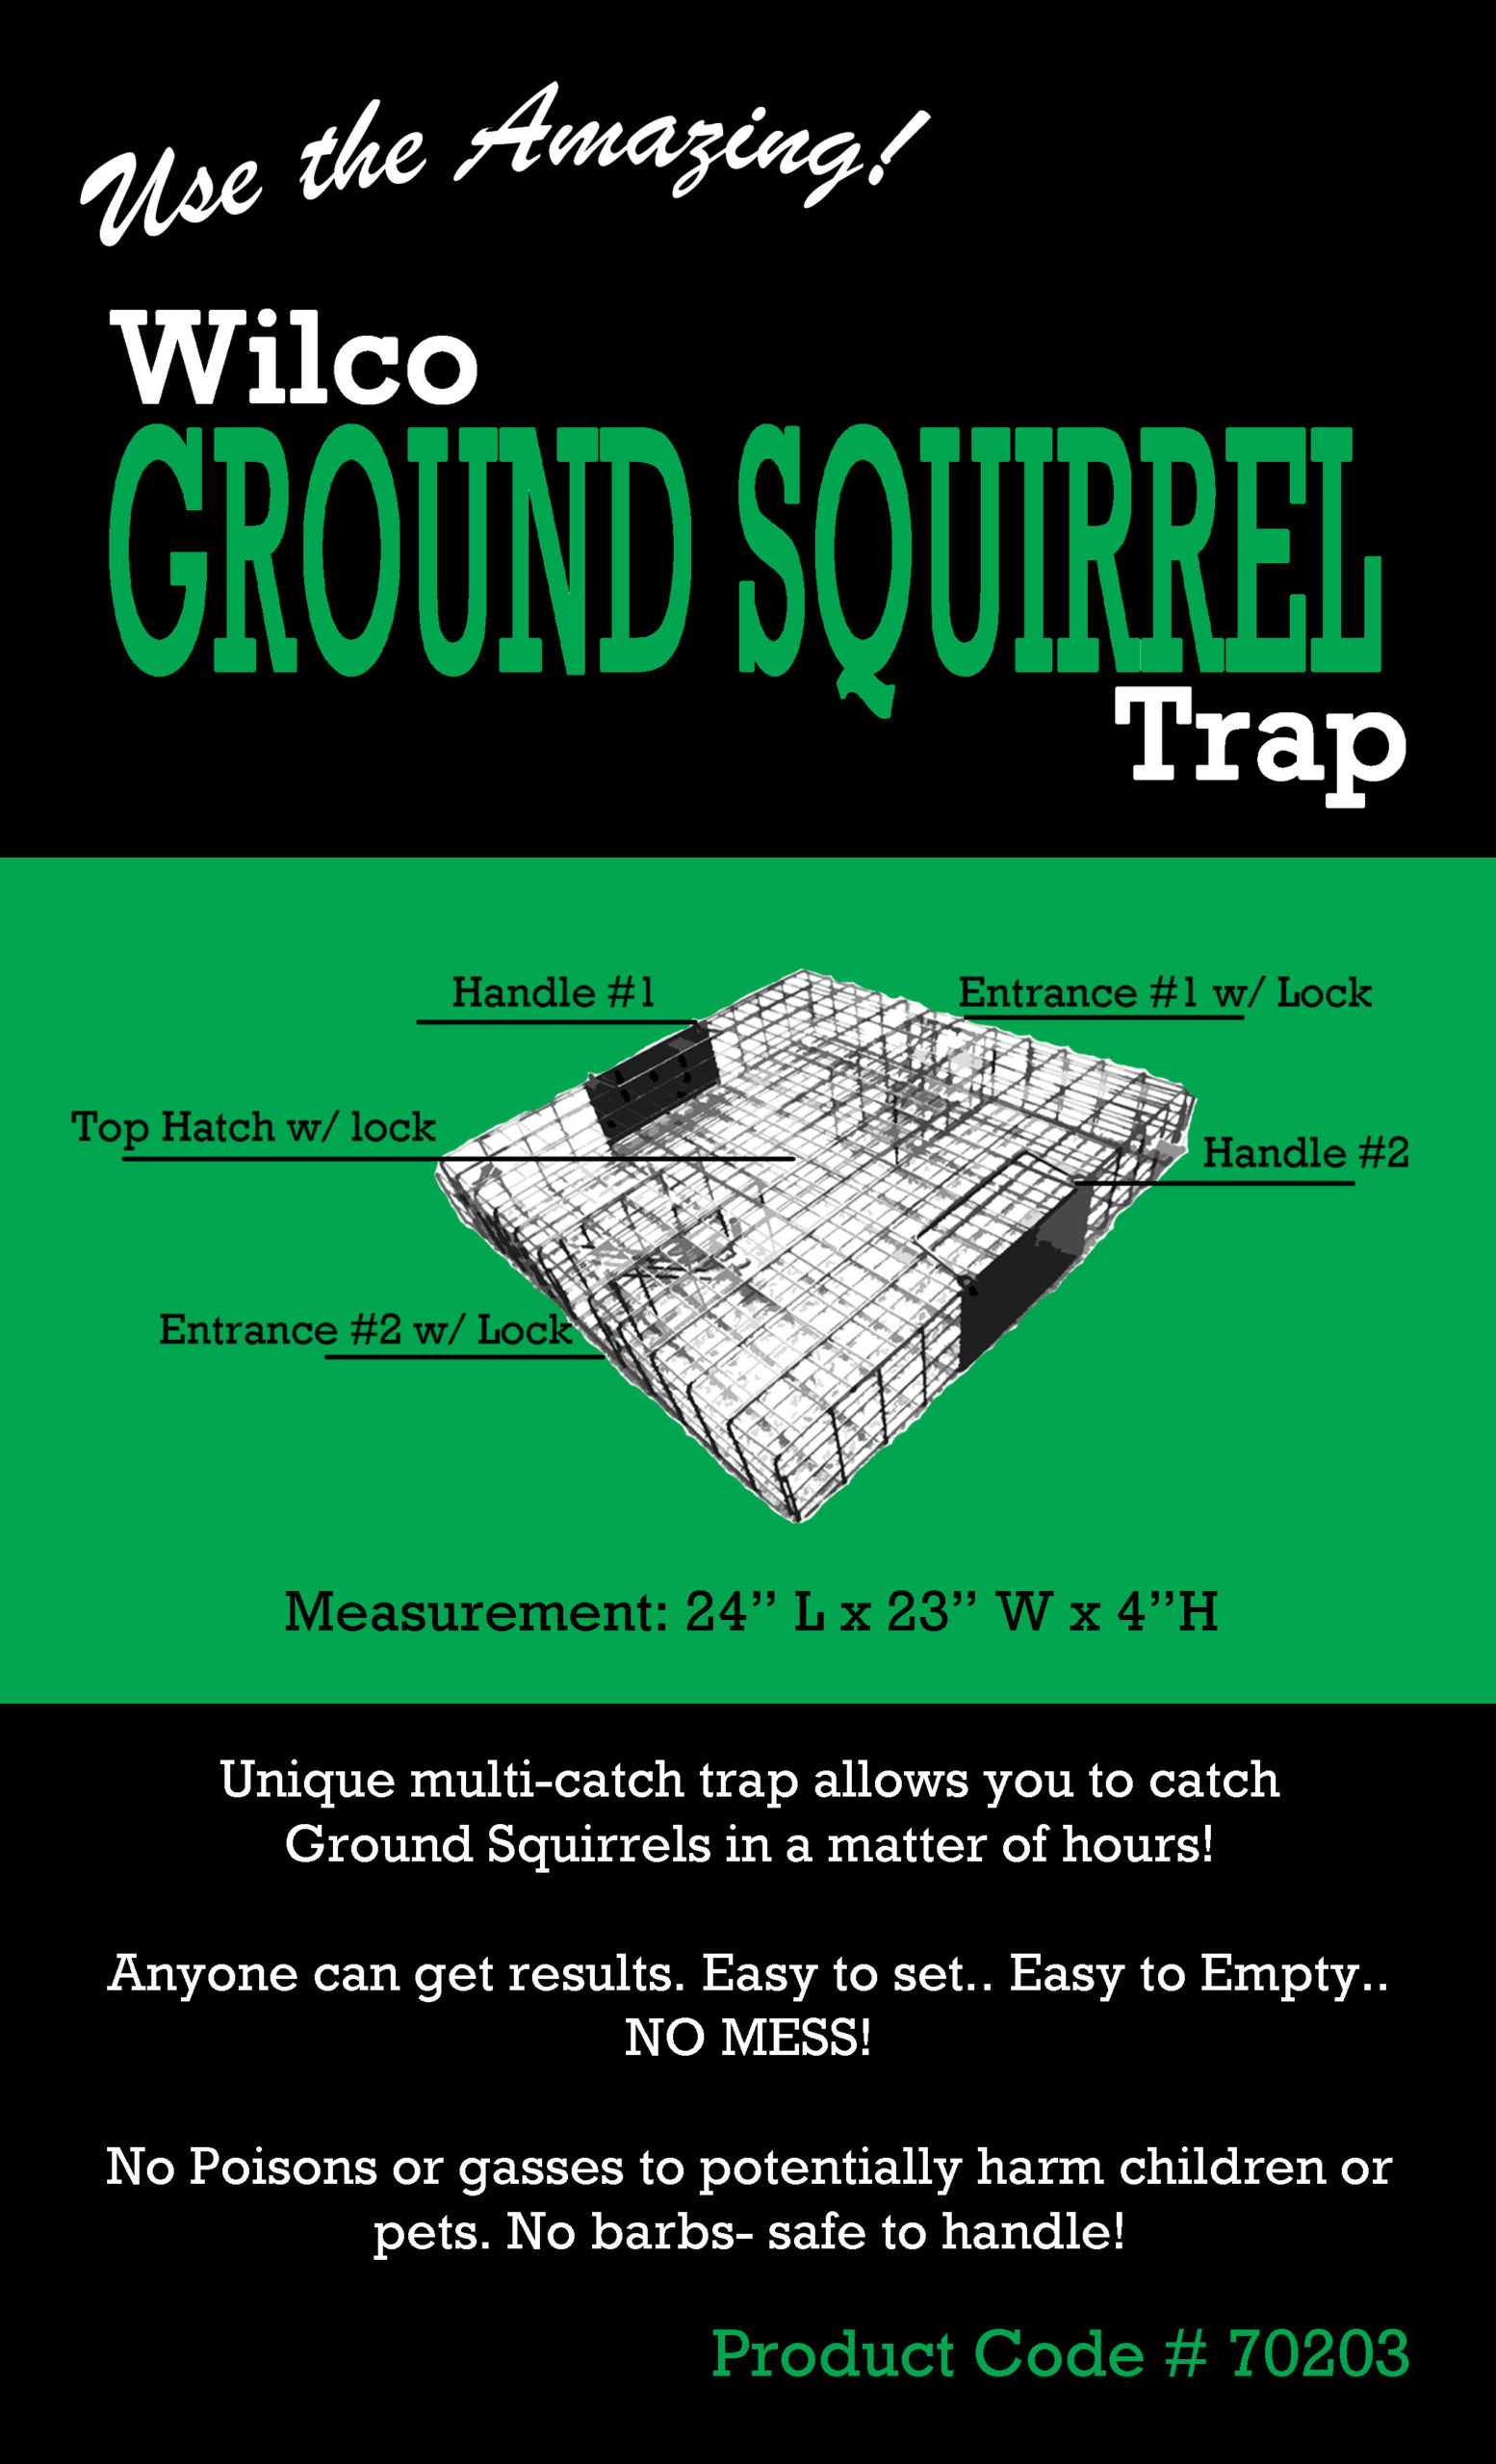 Wilco Ground Squirrel Trap